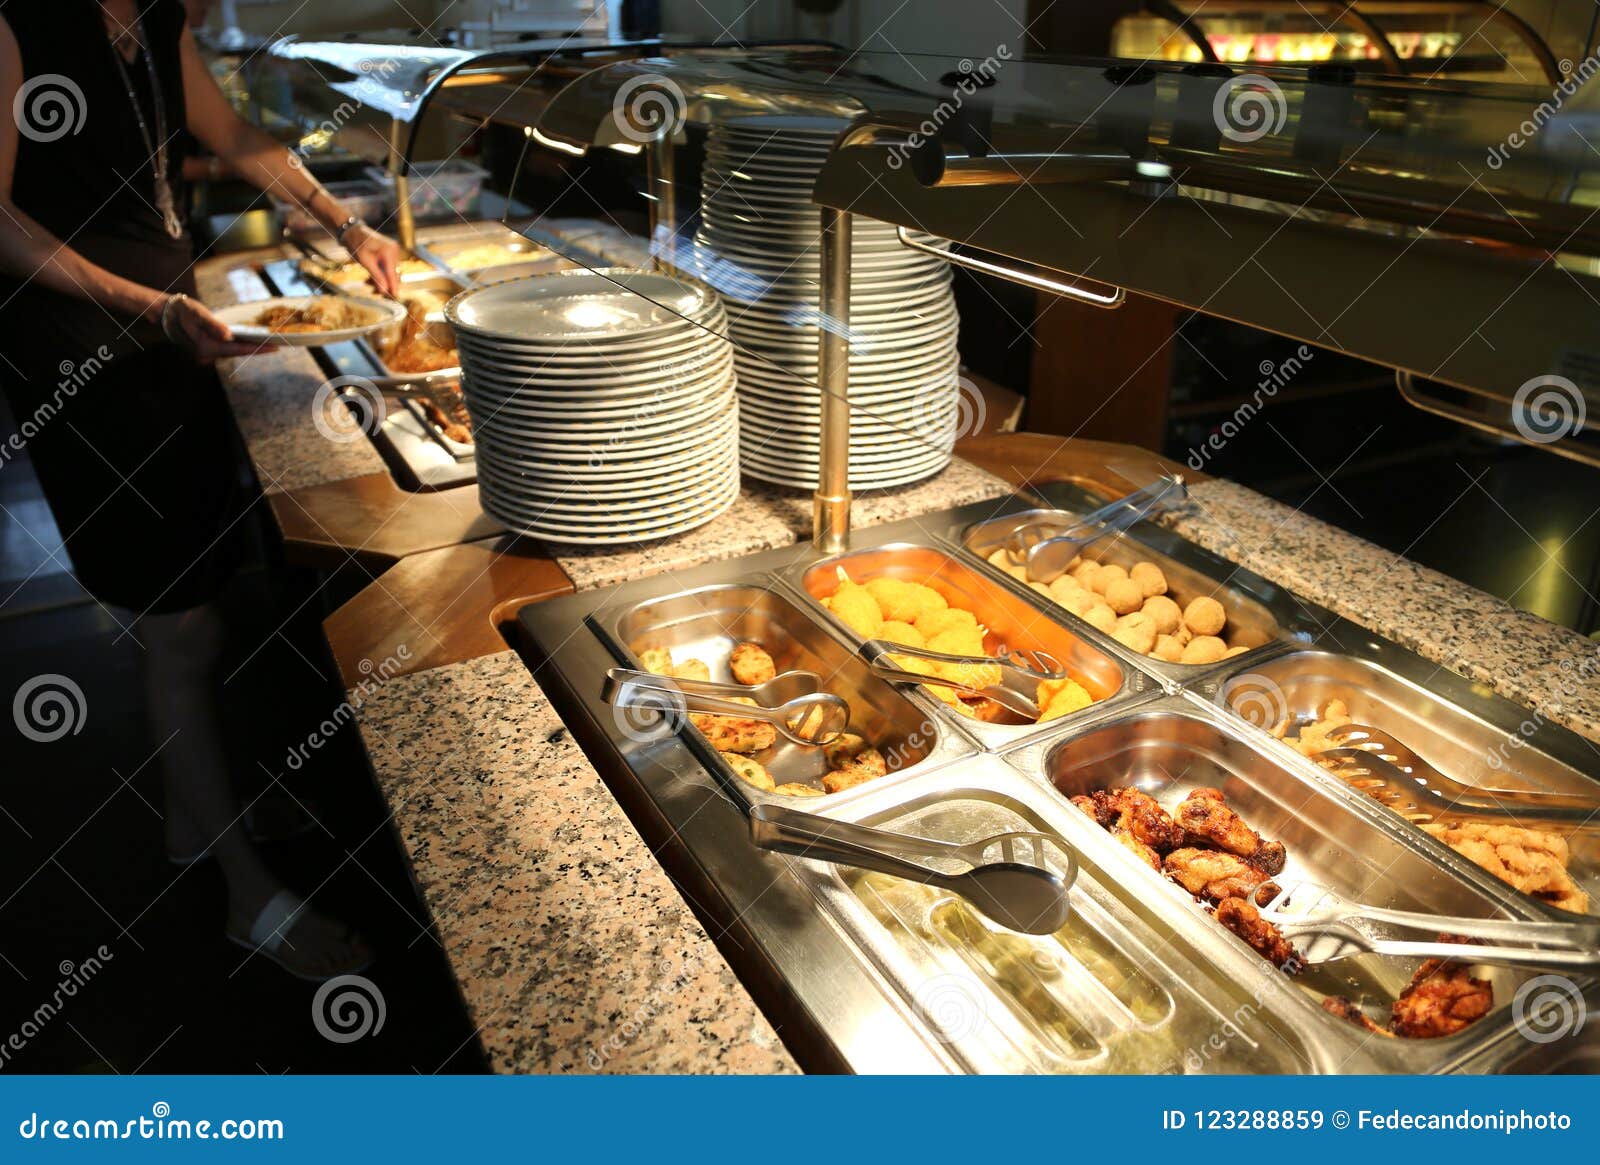 Restaurante del autoservicio con muchos platos y bandejas por completo de comida para los clientes